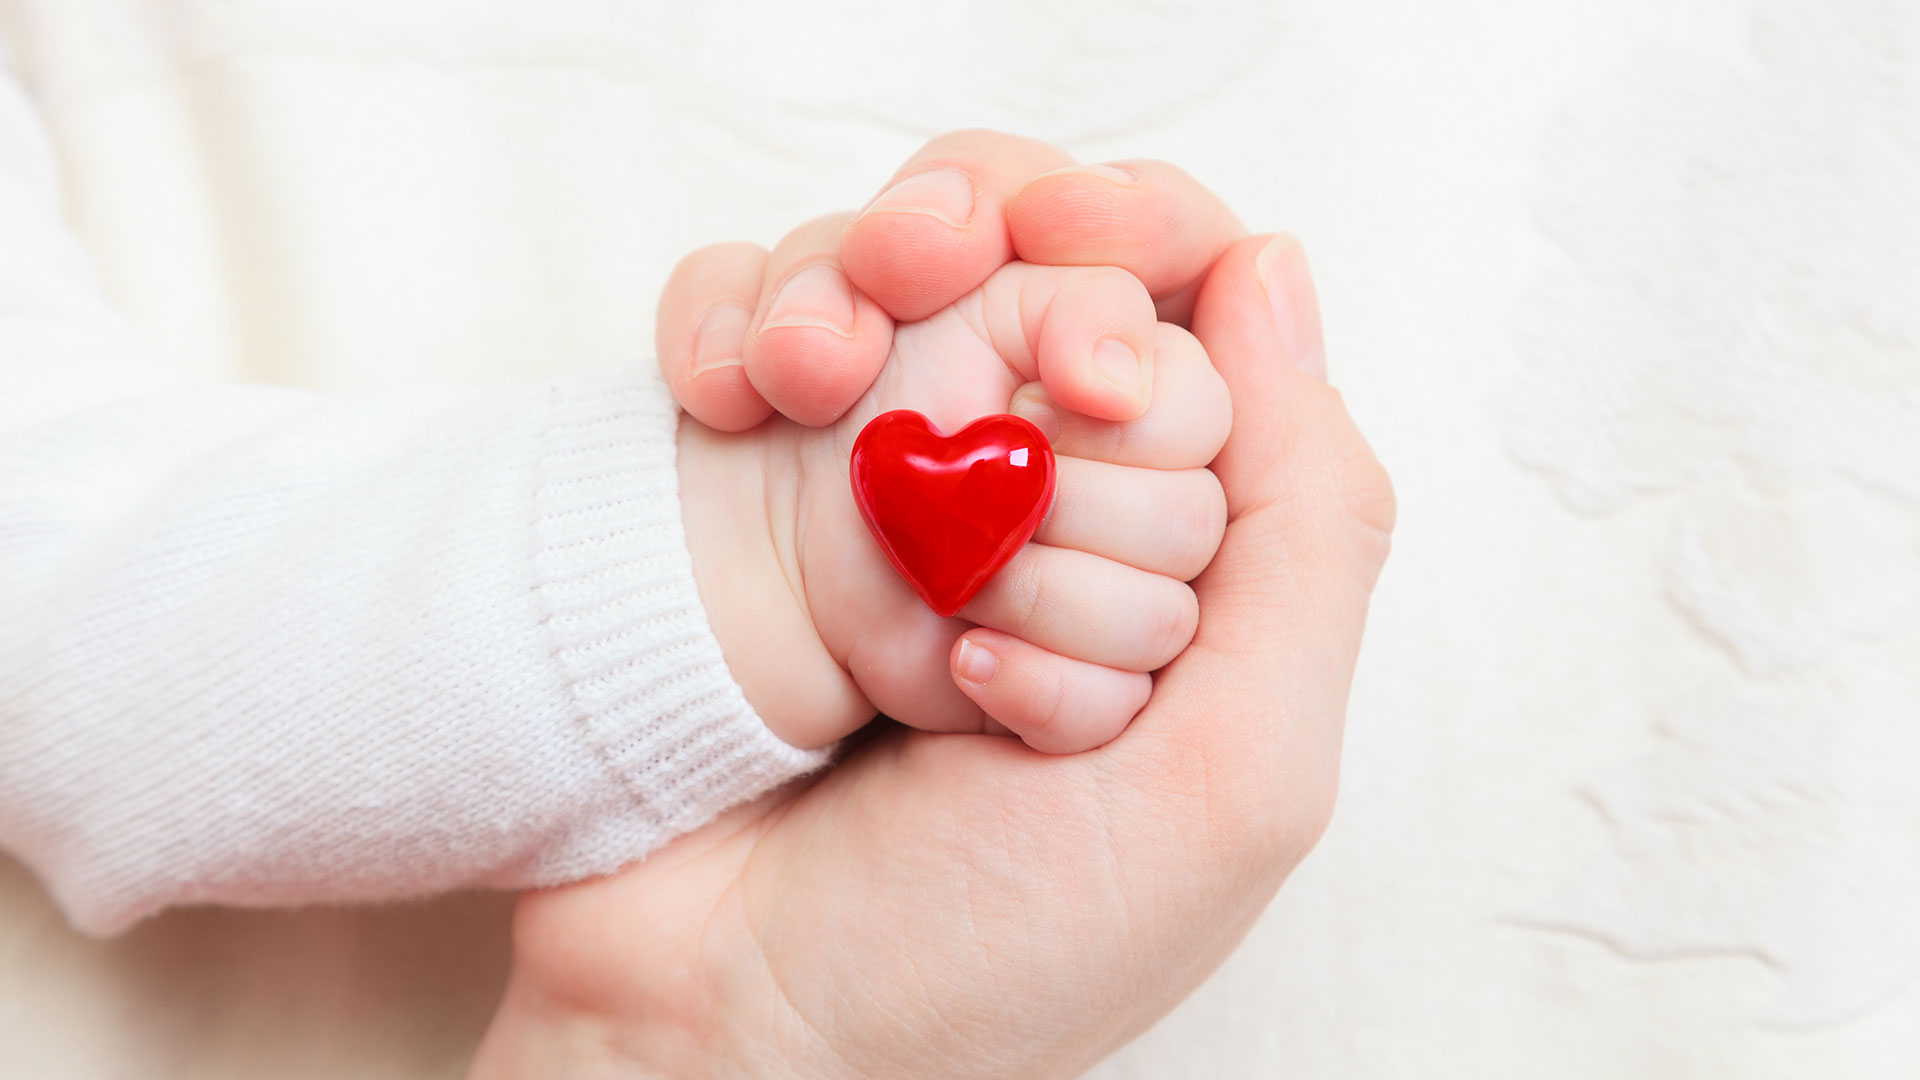 mão de um bebê envolta na mão de um adulto. O bebê tem um coração vermelho em frente os dedos